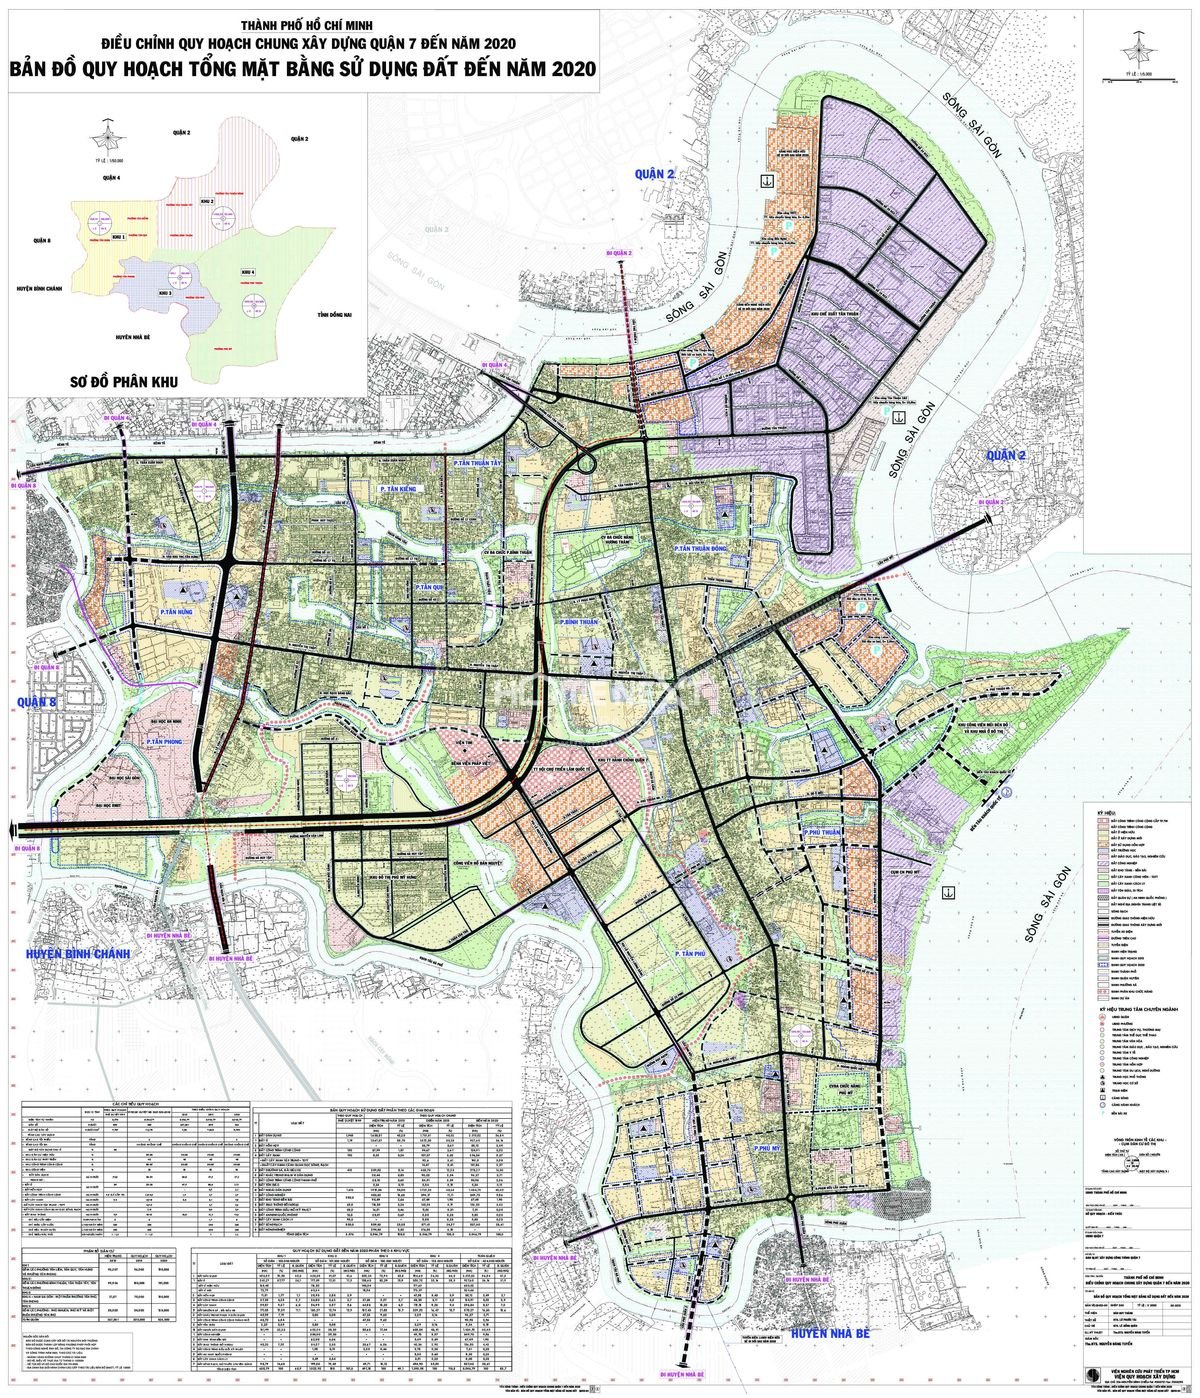 Bản đồ đường quận 7 TP HCM mới nhất đến năm 2024 sẽ giúp bạn dễ dàng tìm kiếm các tuyến đường chính và các trung tâm văn hóa, giải trí. Từ đường Nguyễn Thị Thập đến trung tâm thương mại VIVO, bạn sẽ luôn tìm thấy địa điểm mình muốn đến một cách nhanh chóng và thuận tiện.